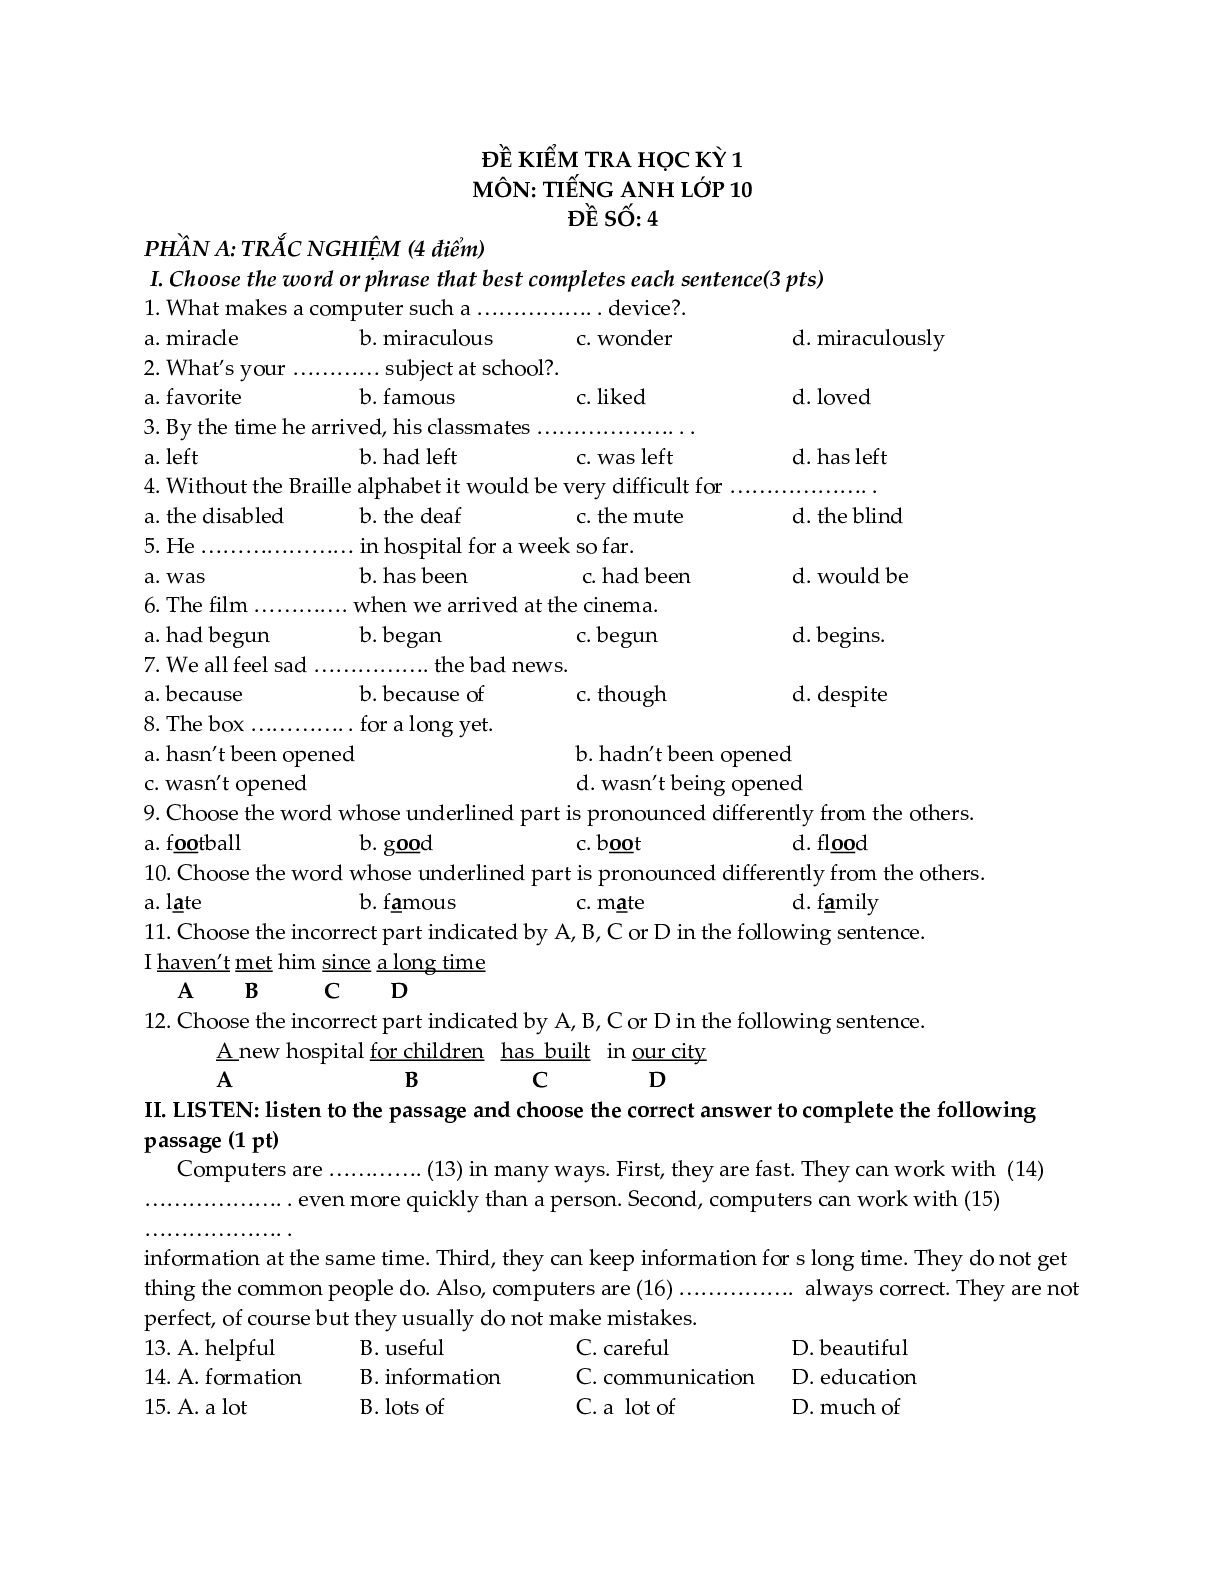 Đề kiểm tra Tiếng Anh 10 học kỳ 1 (có đáp án) (trang 7)